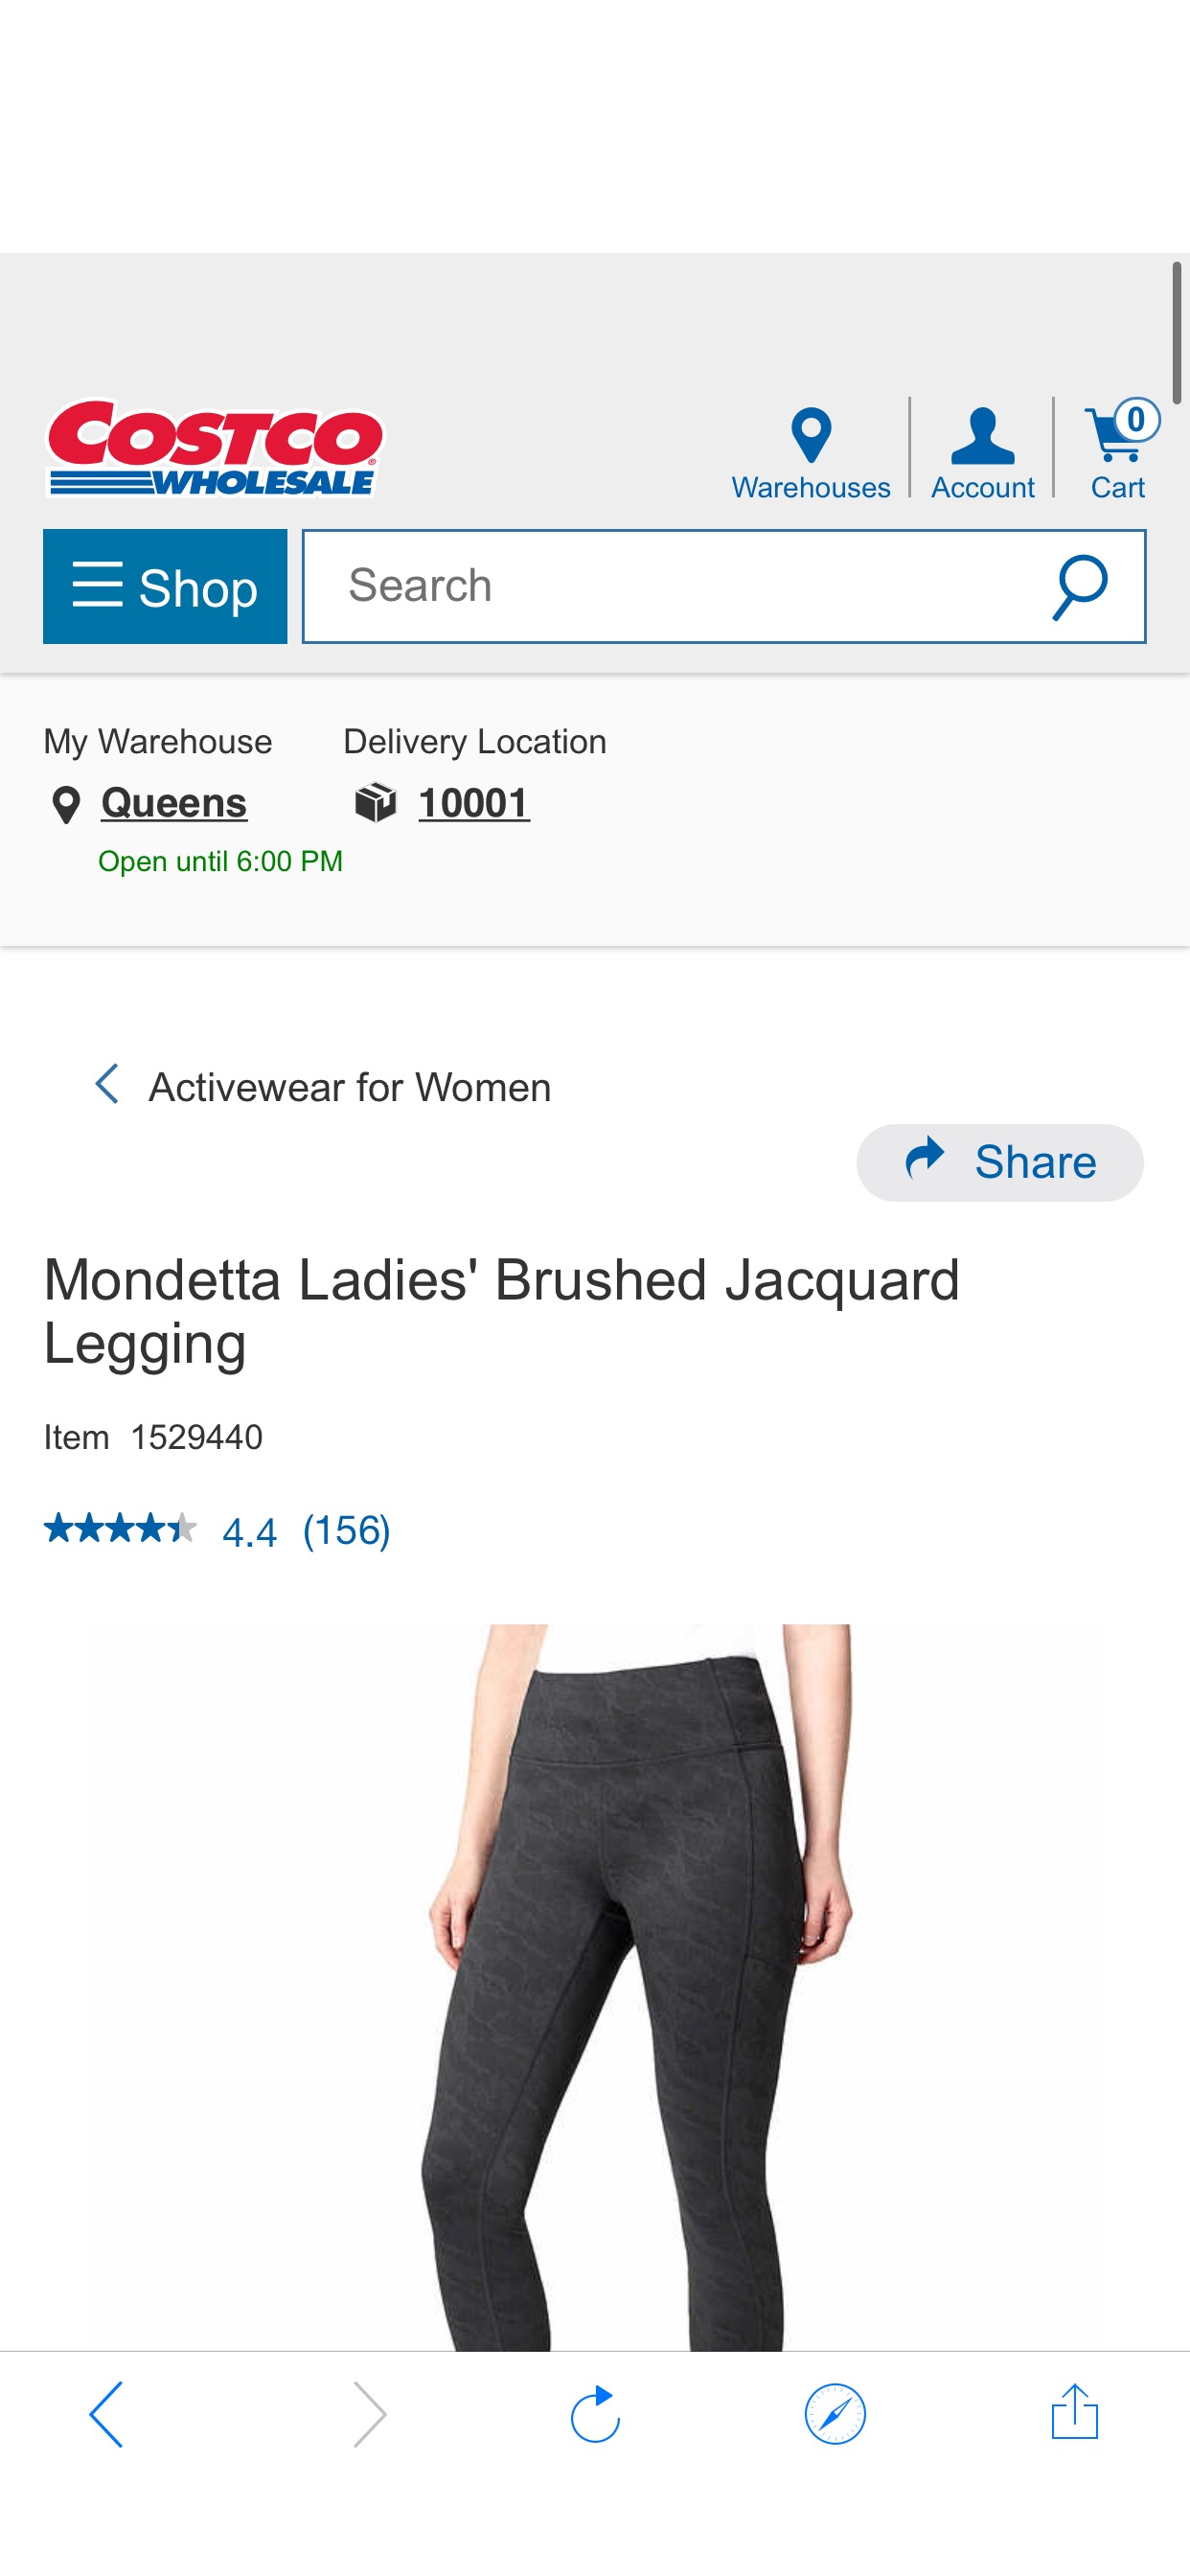 Mondetta Ladies' Brushed Jacquard Legging | Costco 白菜价紧身裤